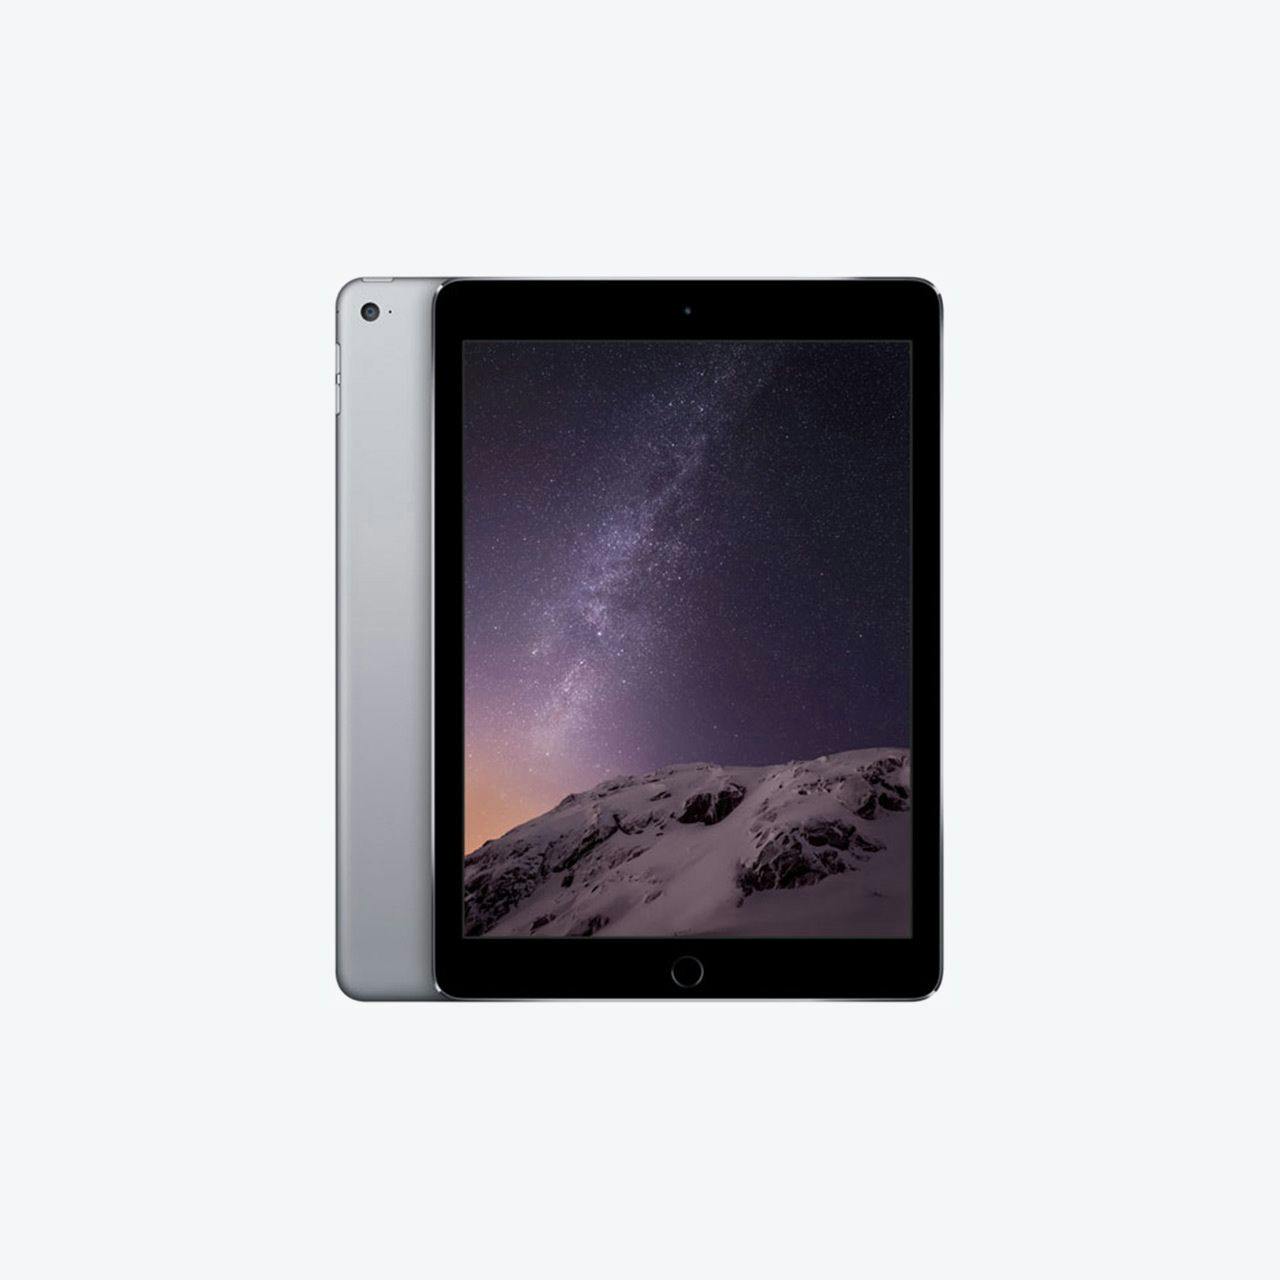 Image of iPad Air 2.